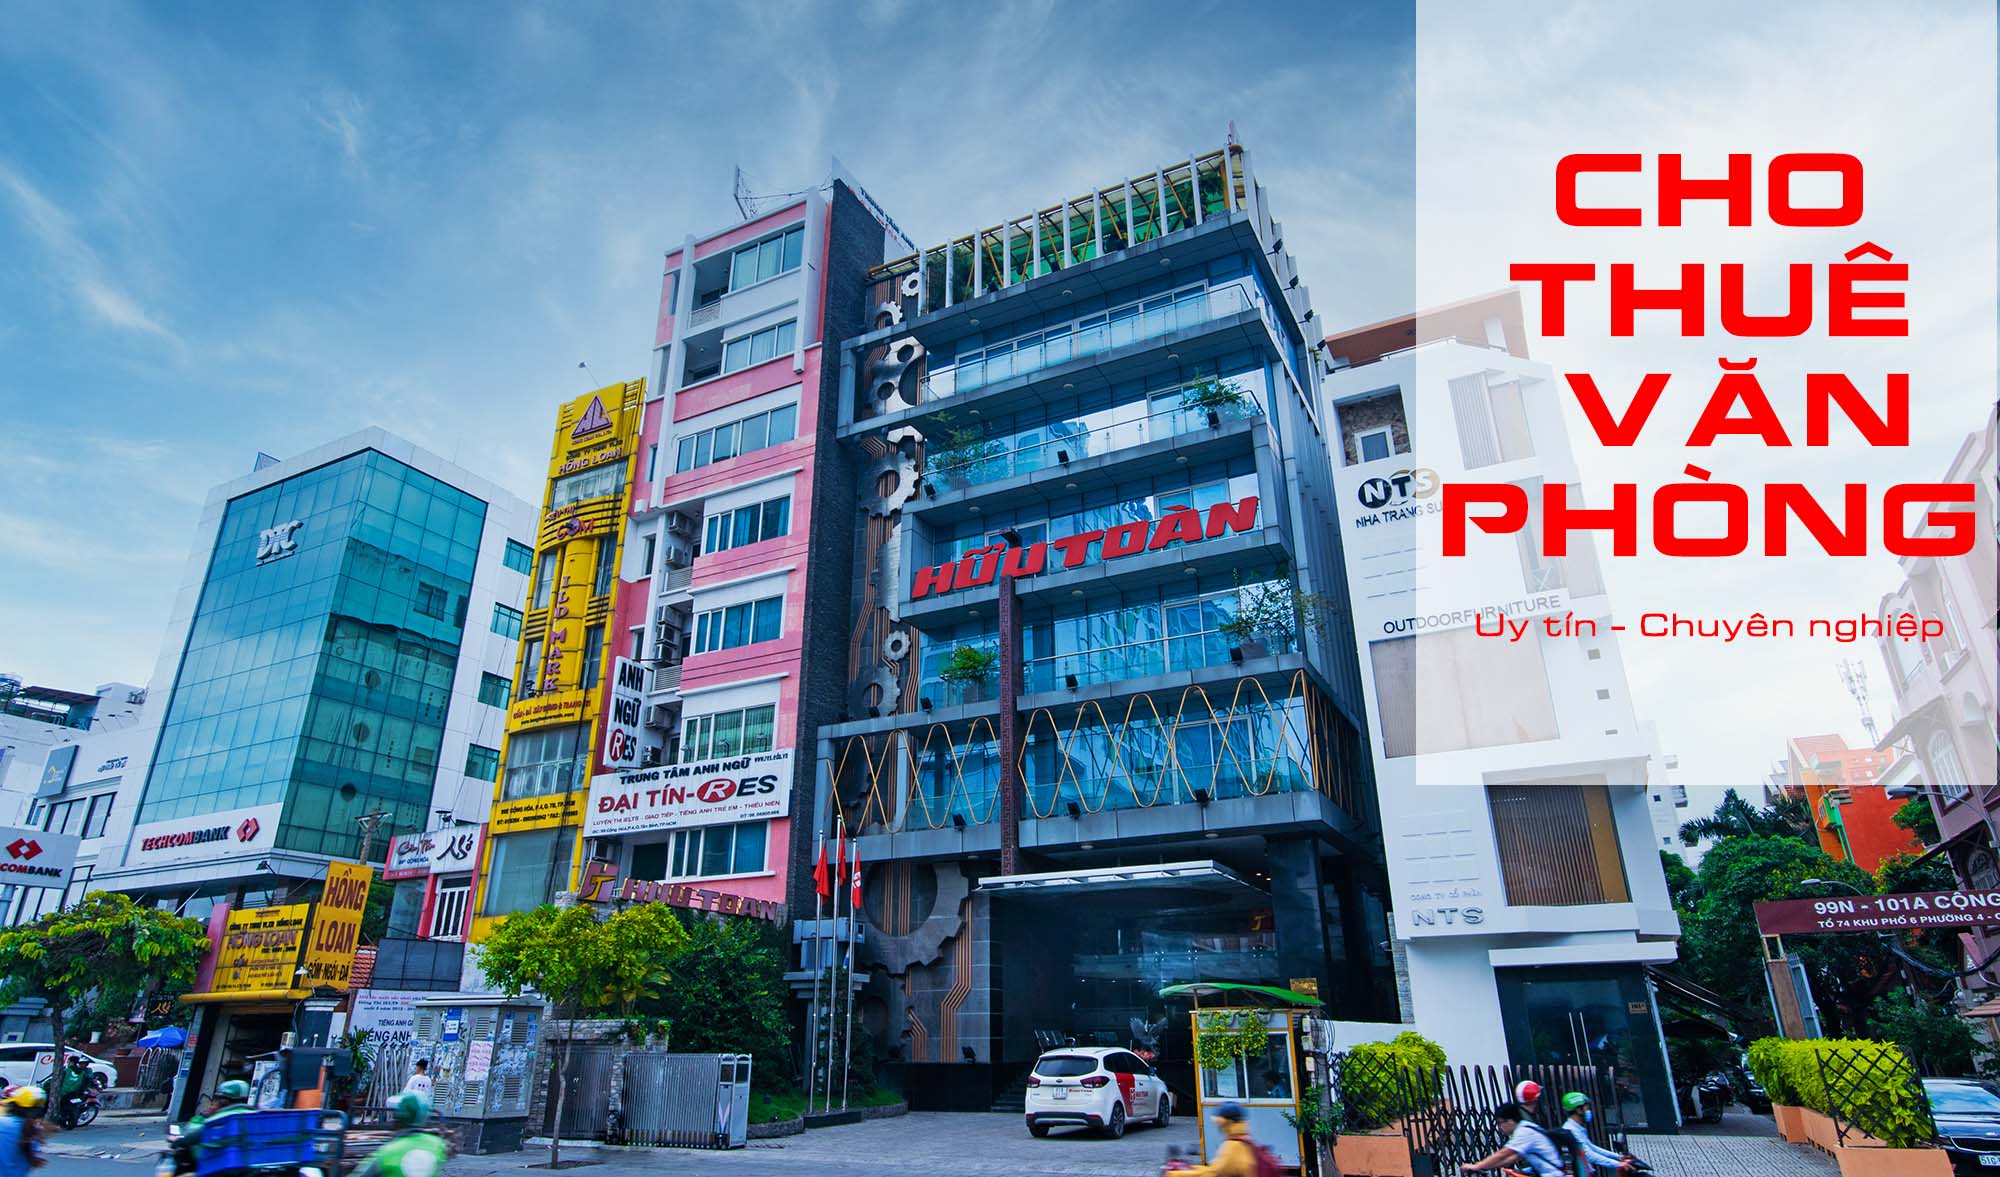 Hữu Toàn Office - Cho thuê văn phòng chia sẻ TP.HCM uy tín chuyên nghiệp